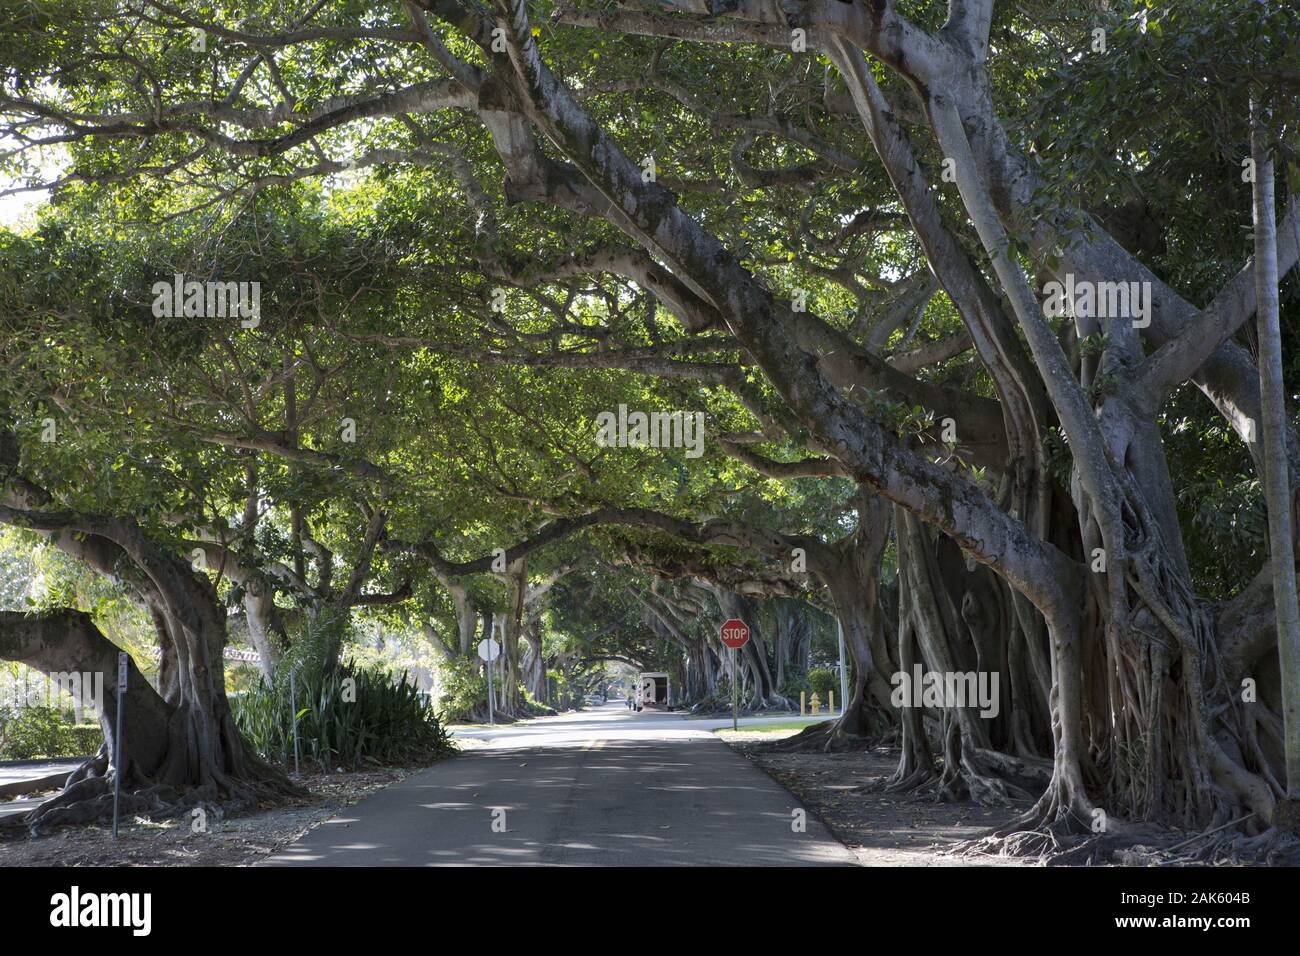 Miami: Allee im Stadtviertel Coral Gables, Florida | Verwendung weltweit Stockfoto